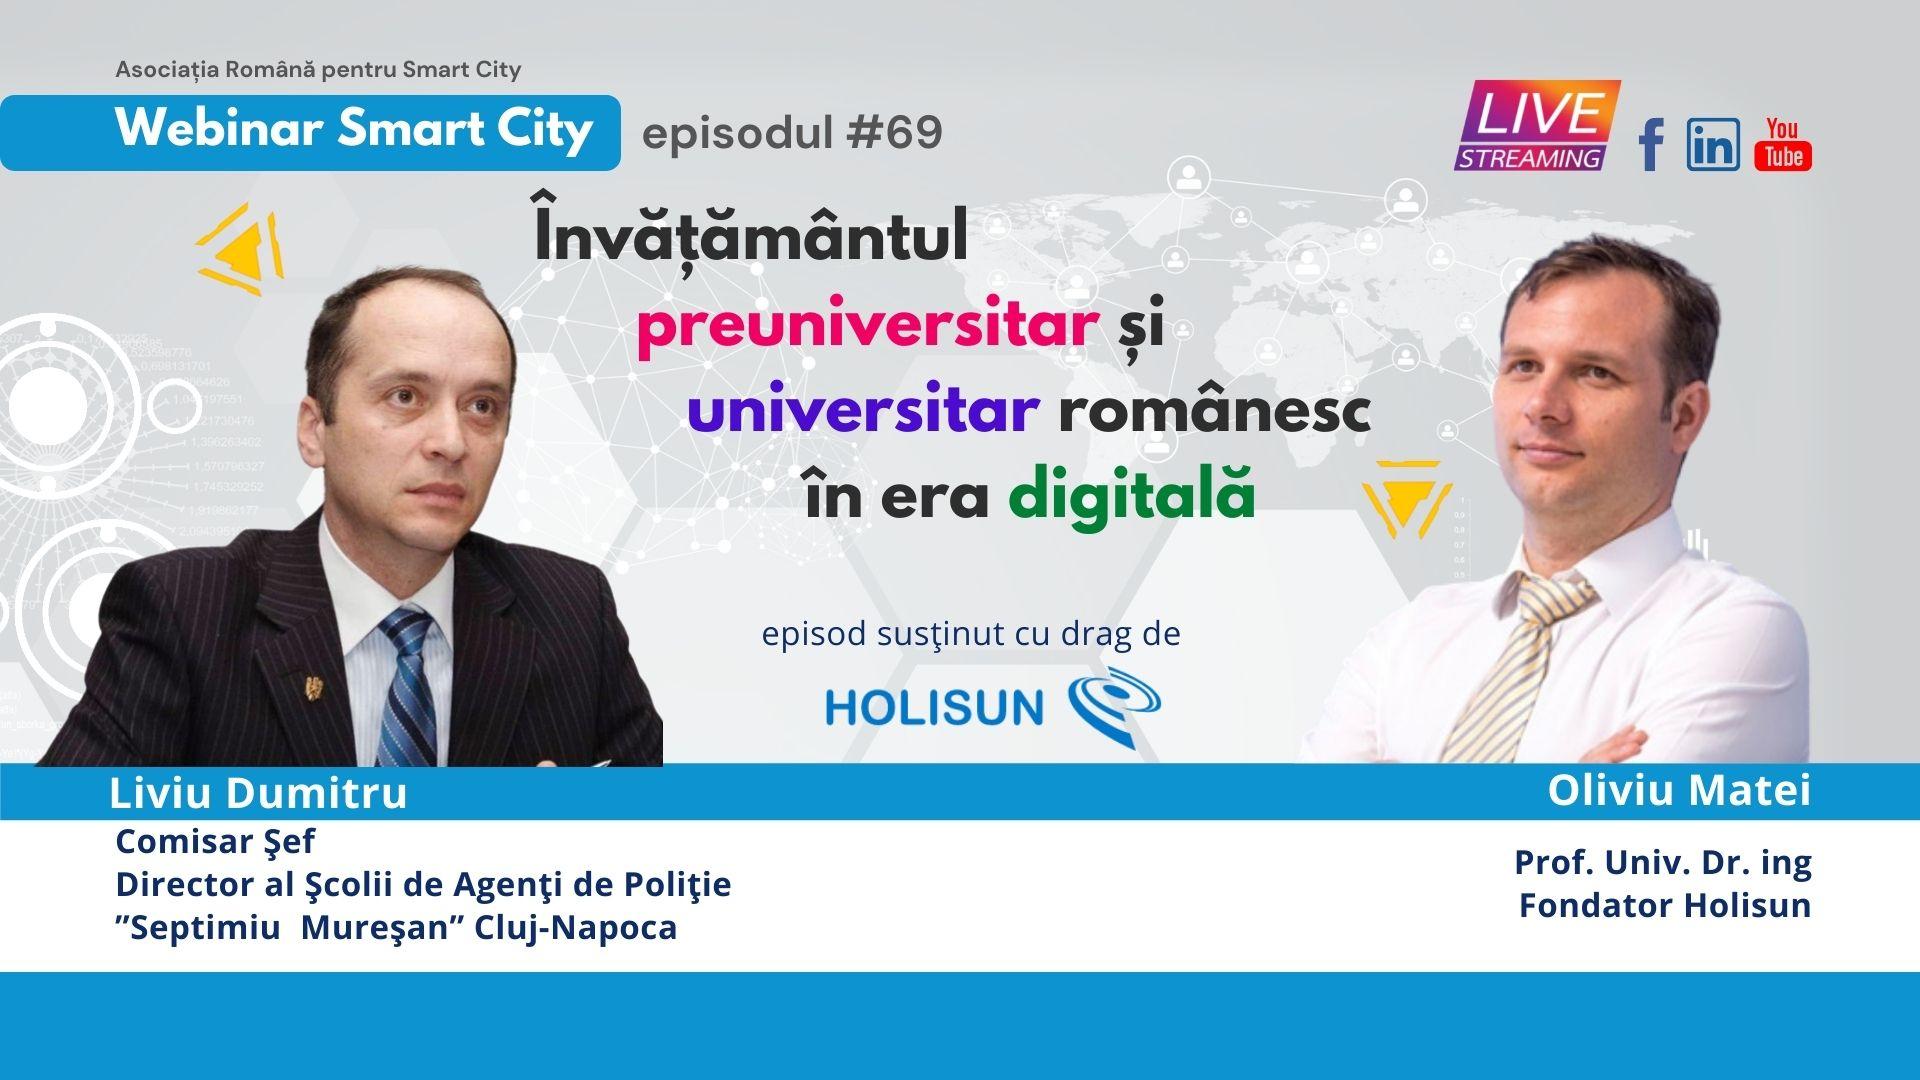 Învățământul preuniversitar și universitar românesc în era digitală